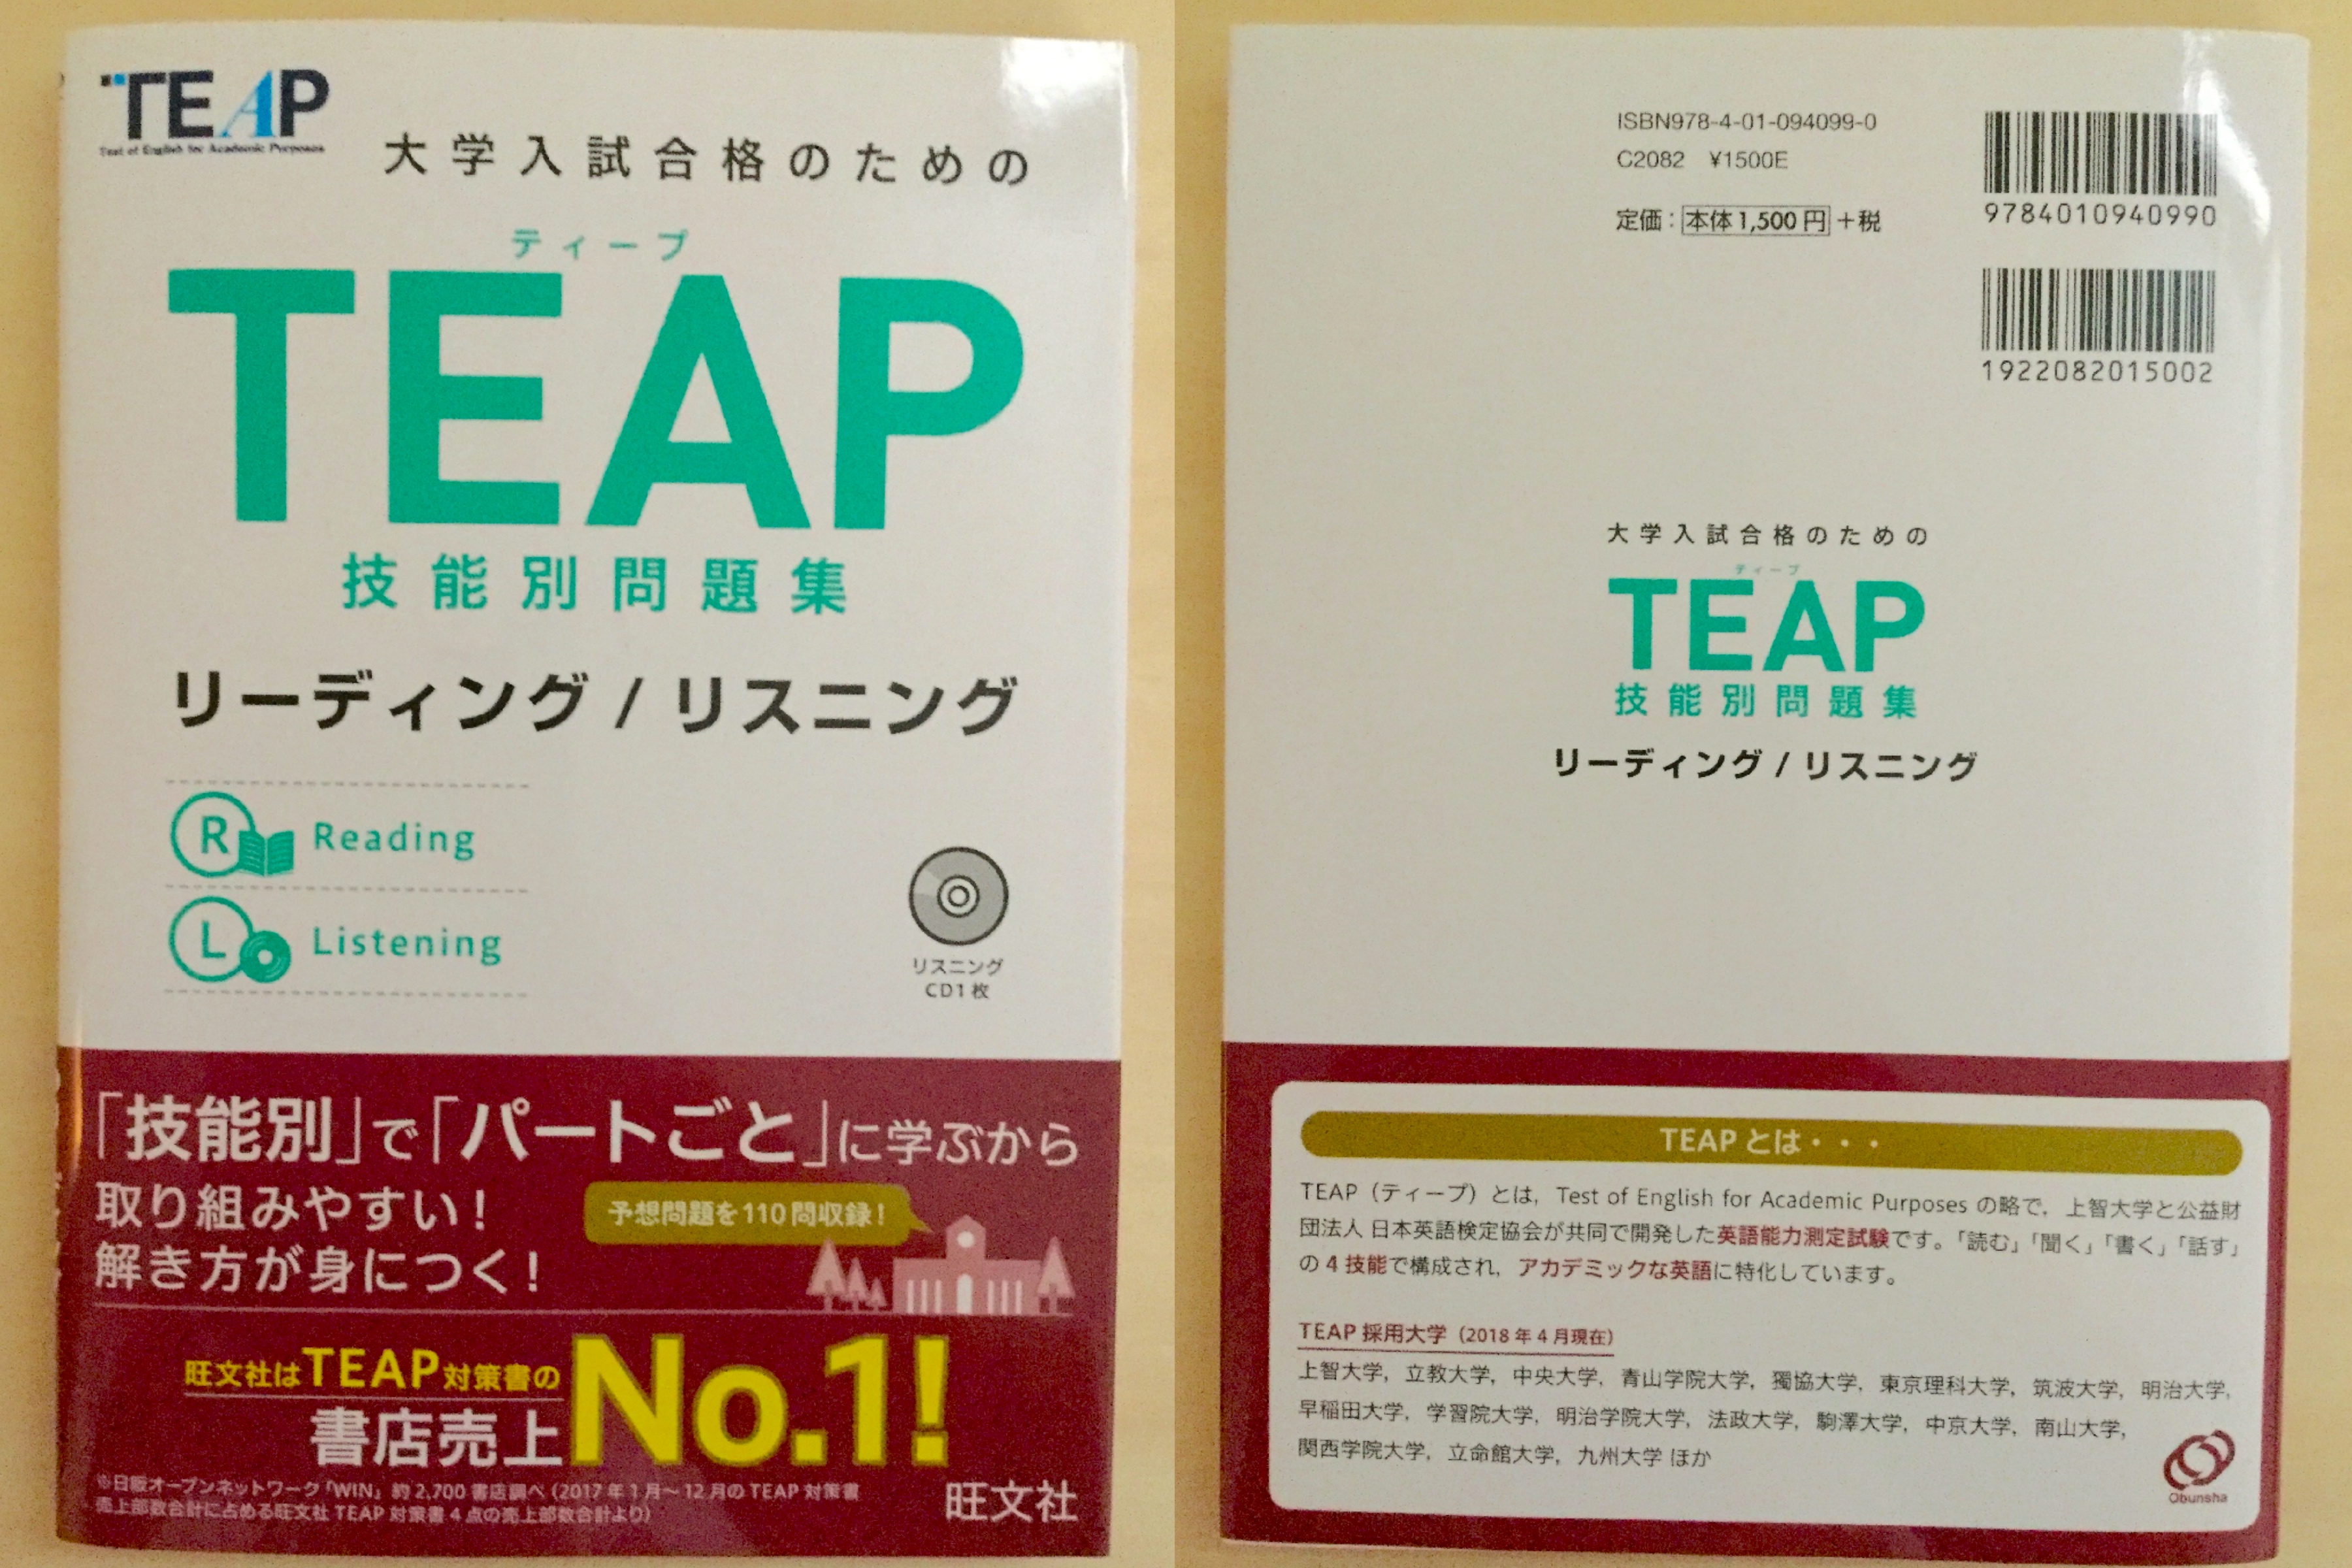 レビュー】【CD付】TEAP技能別問題集リーディング/リスニング (大学入試合格のためのTEAP対策書) 資格hacker